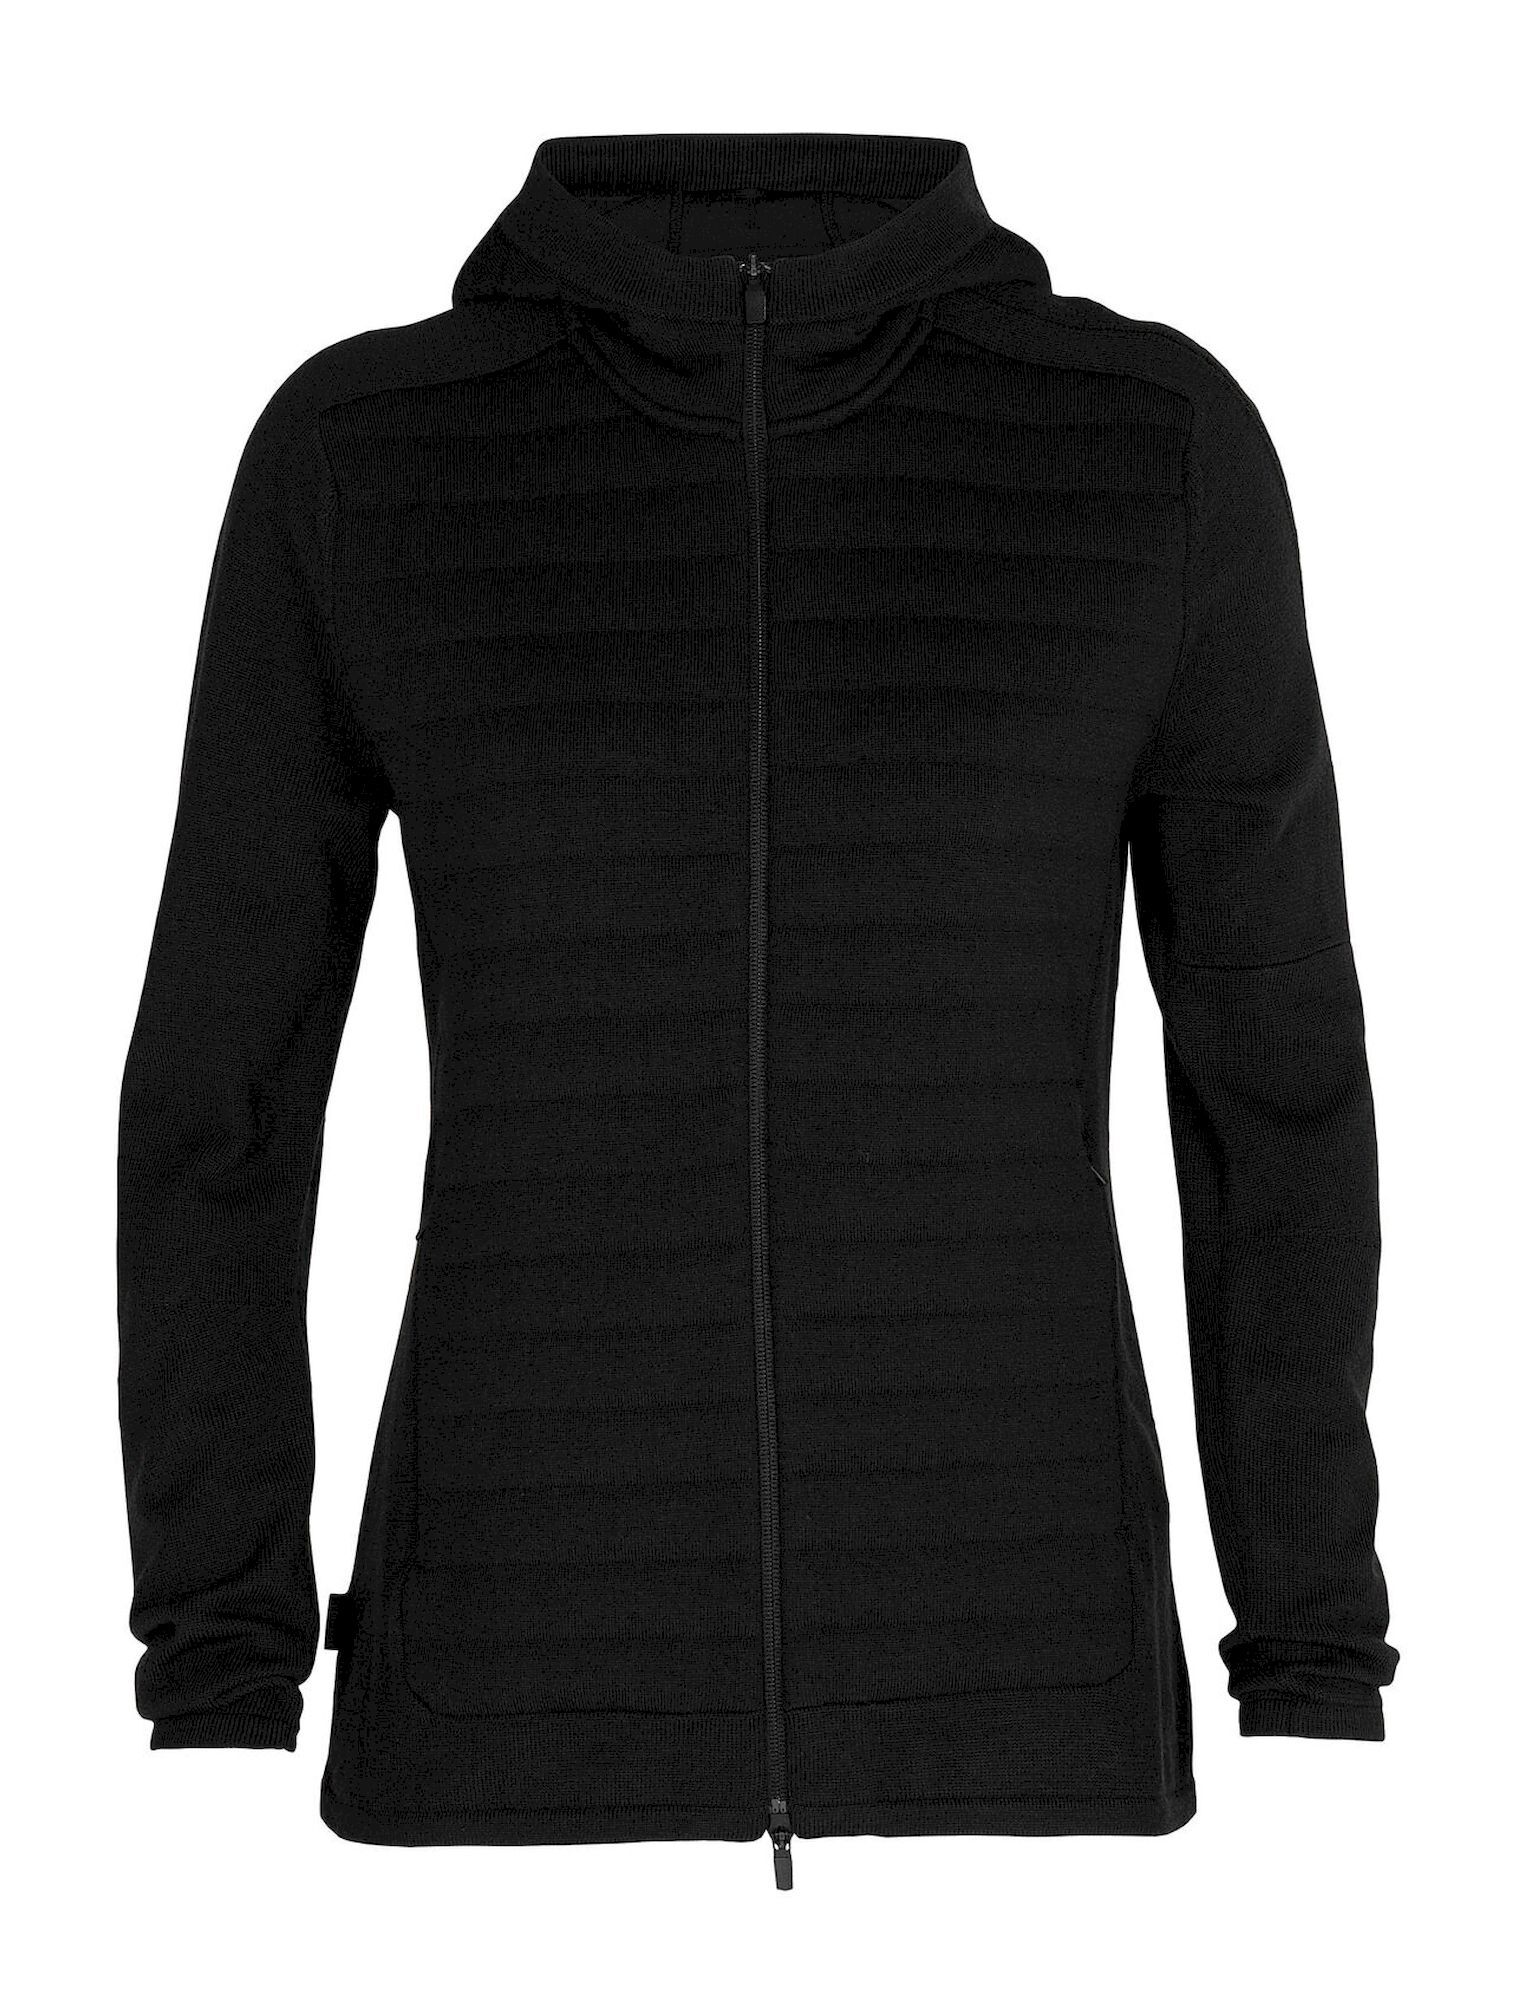 Icebreaker ZoneKnit Insulated LS Zip Hoodie - Merino Fleece jacket - Women's I Hardloop